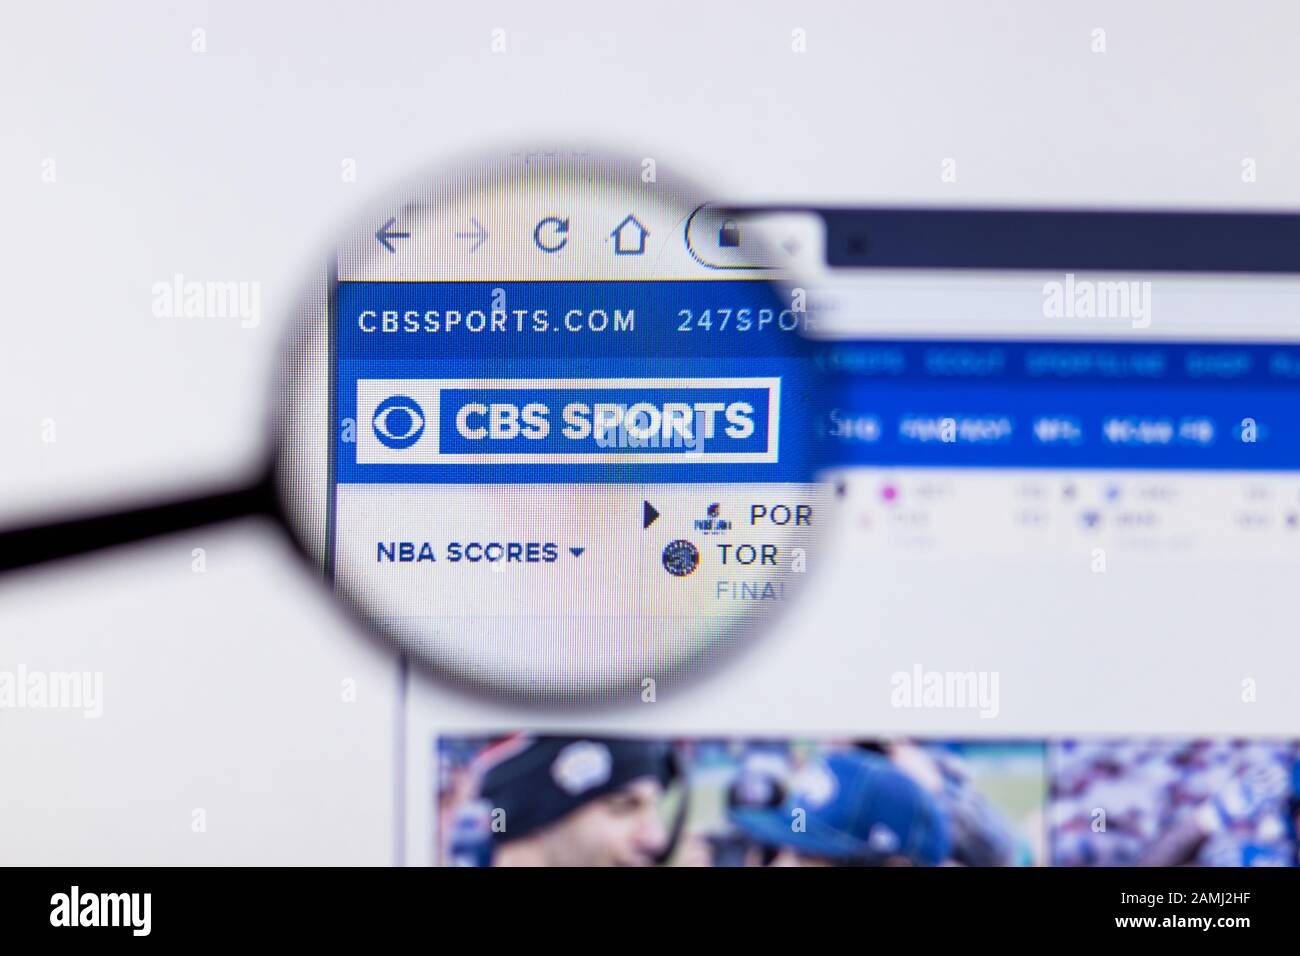 Saint-Pétersbourg, Russie - 10 janvier 2020: Page du site Web de CBS Sports sur un écran d'ordinateur portable avec logo, éditorial illustratif Banque D'Images